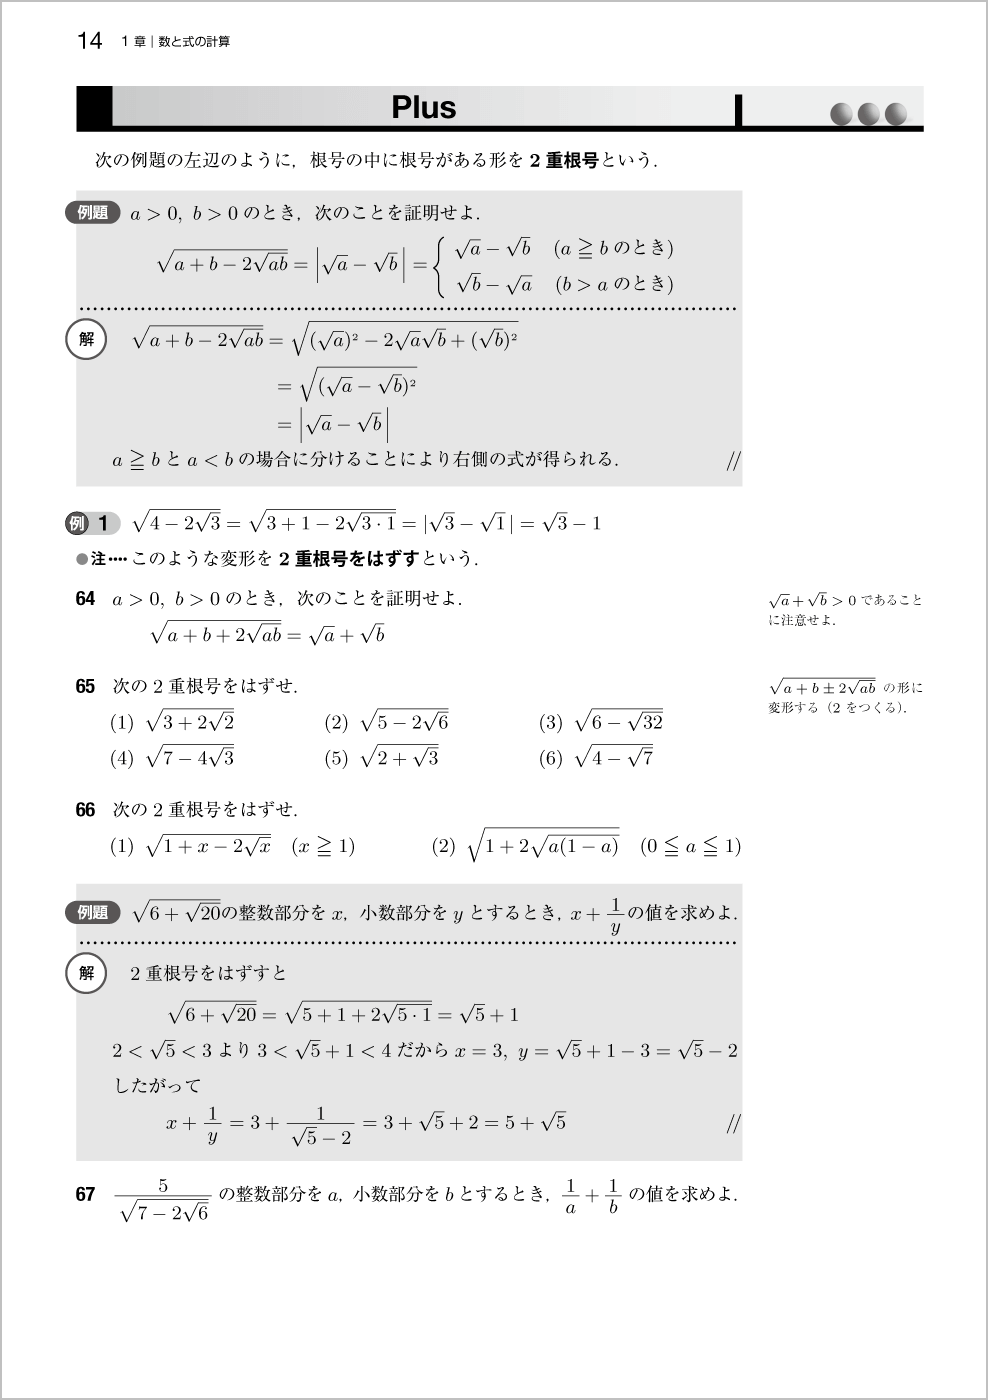 新基礎数学問題集改訂版 p.14